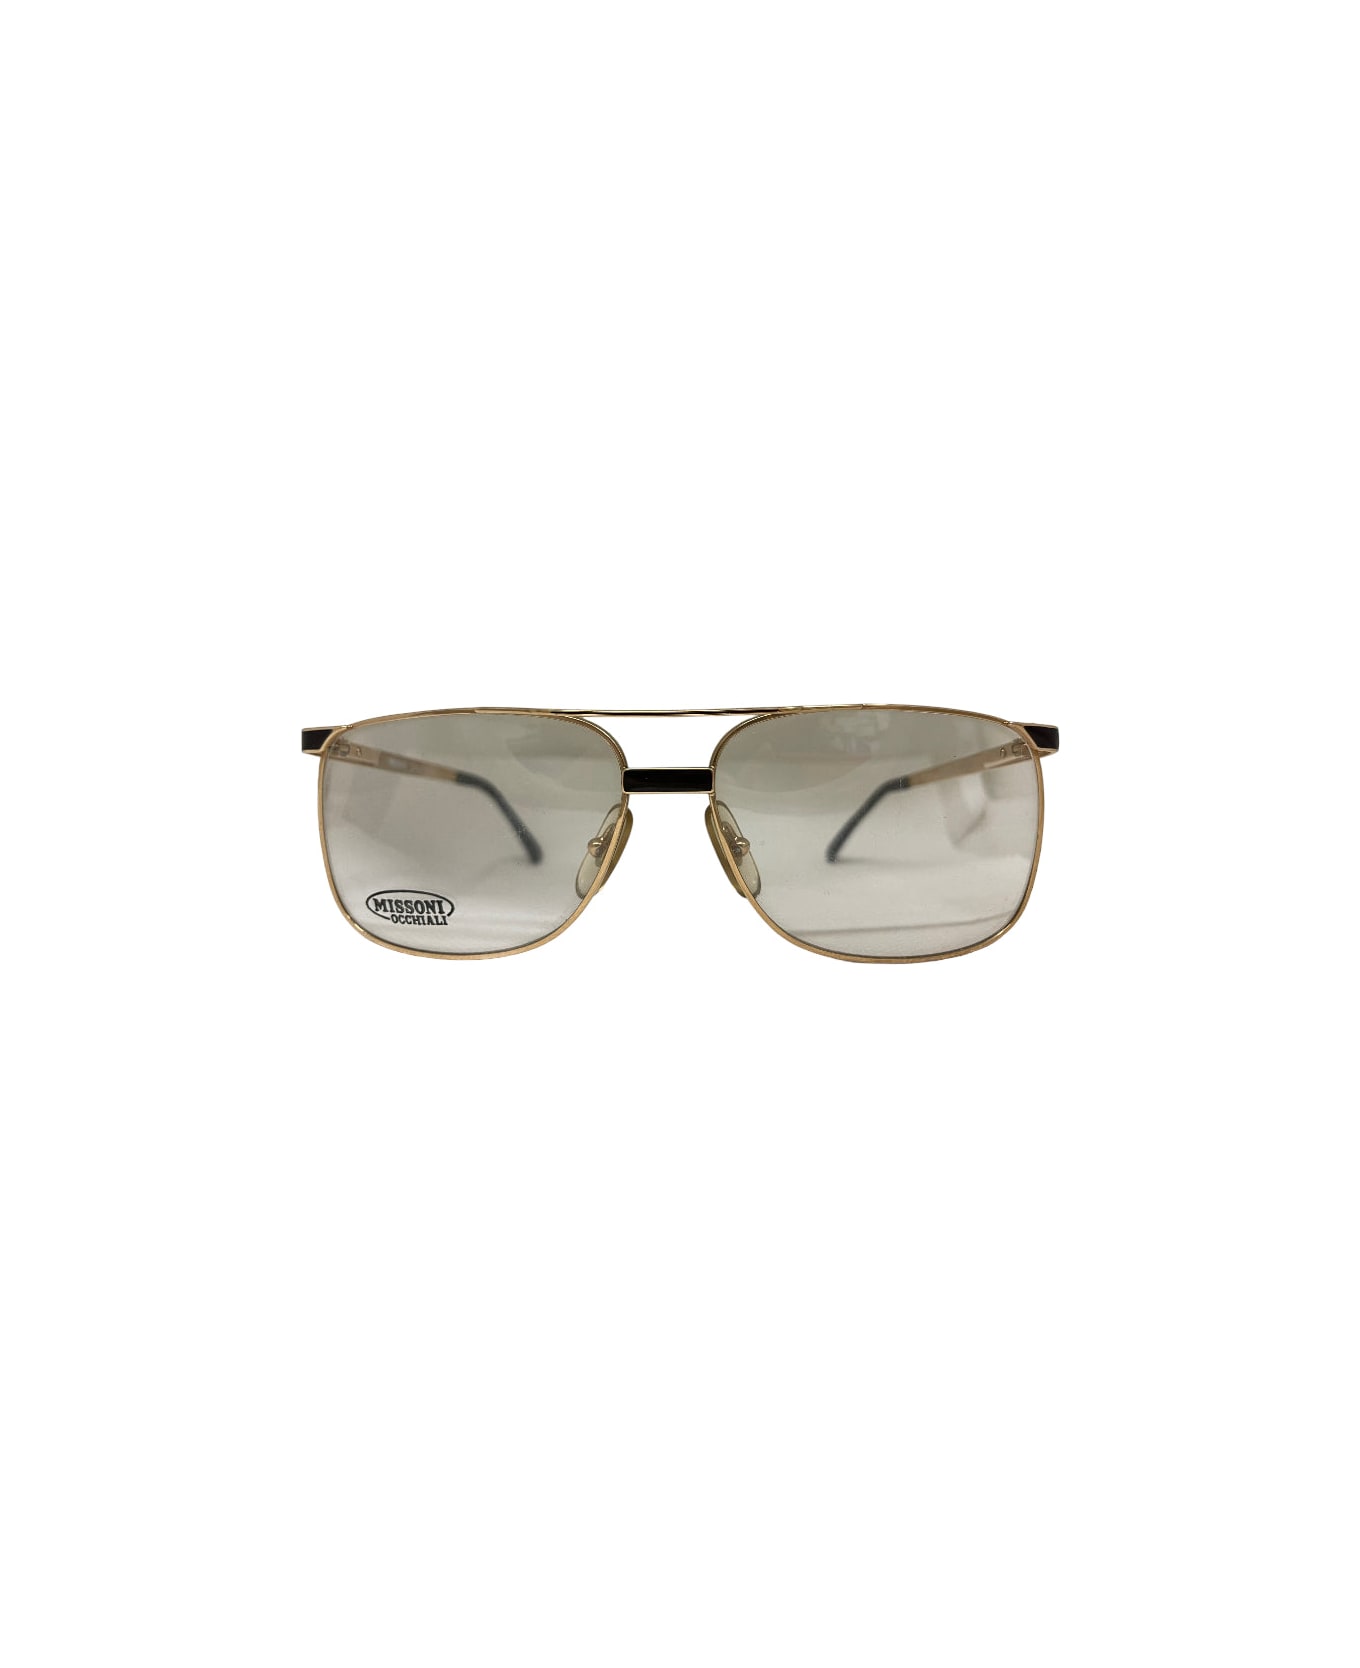 Missoni M 406 - Gold Glasses アイウェア